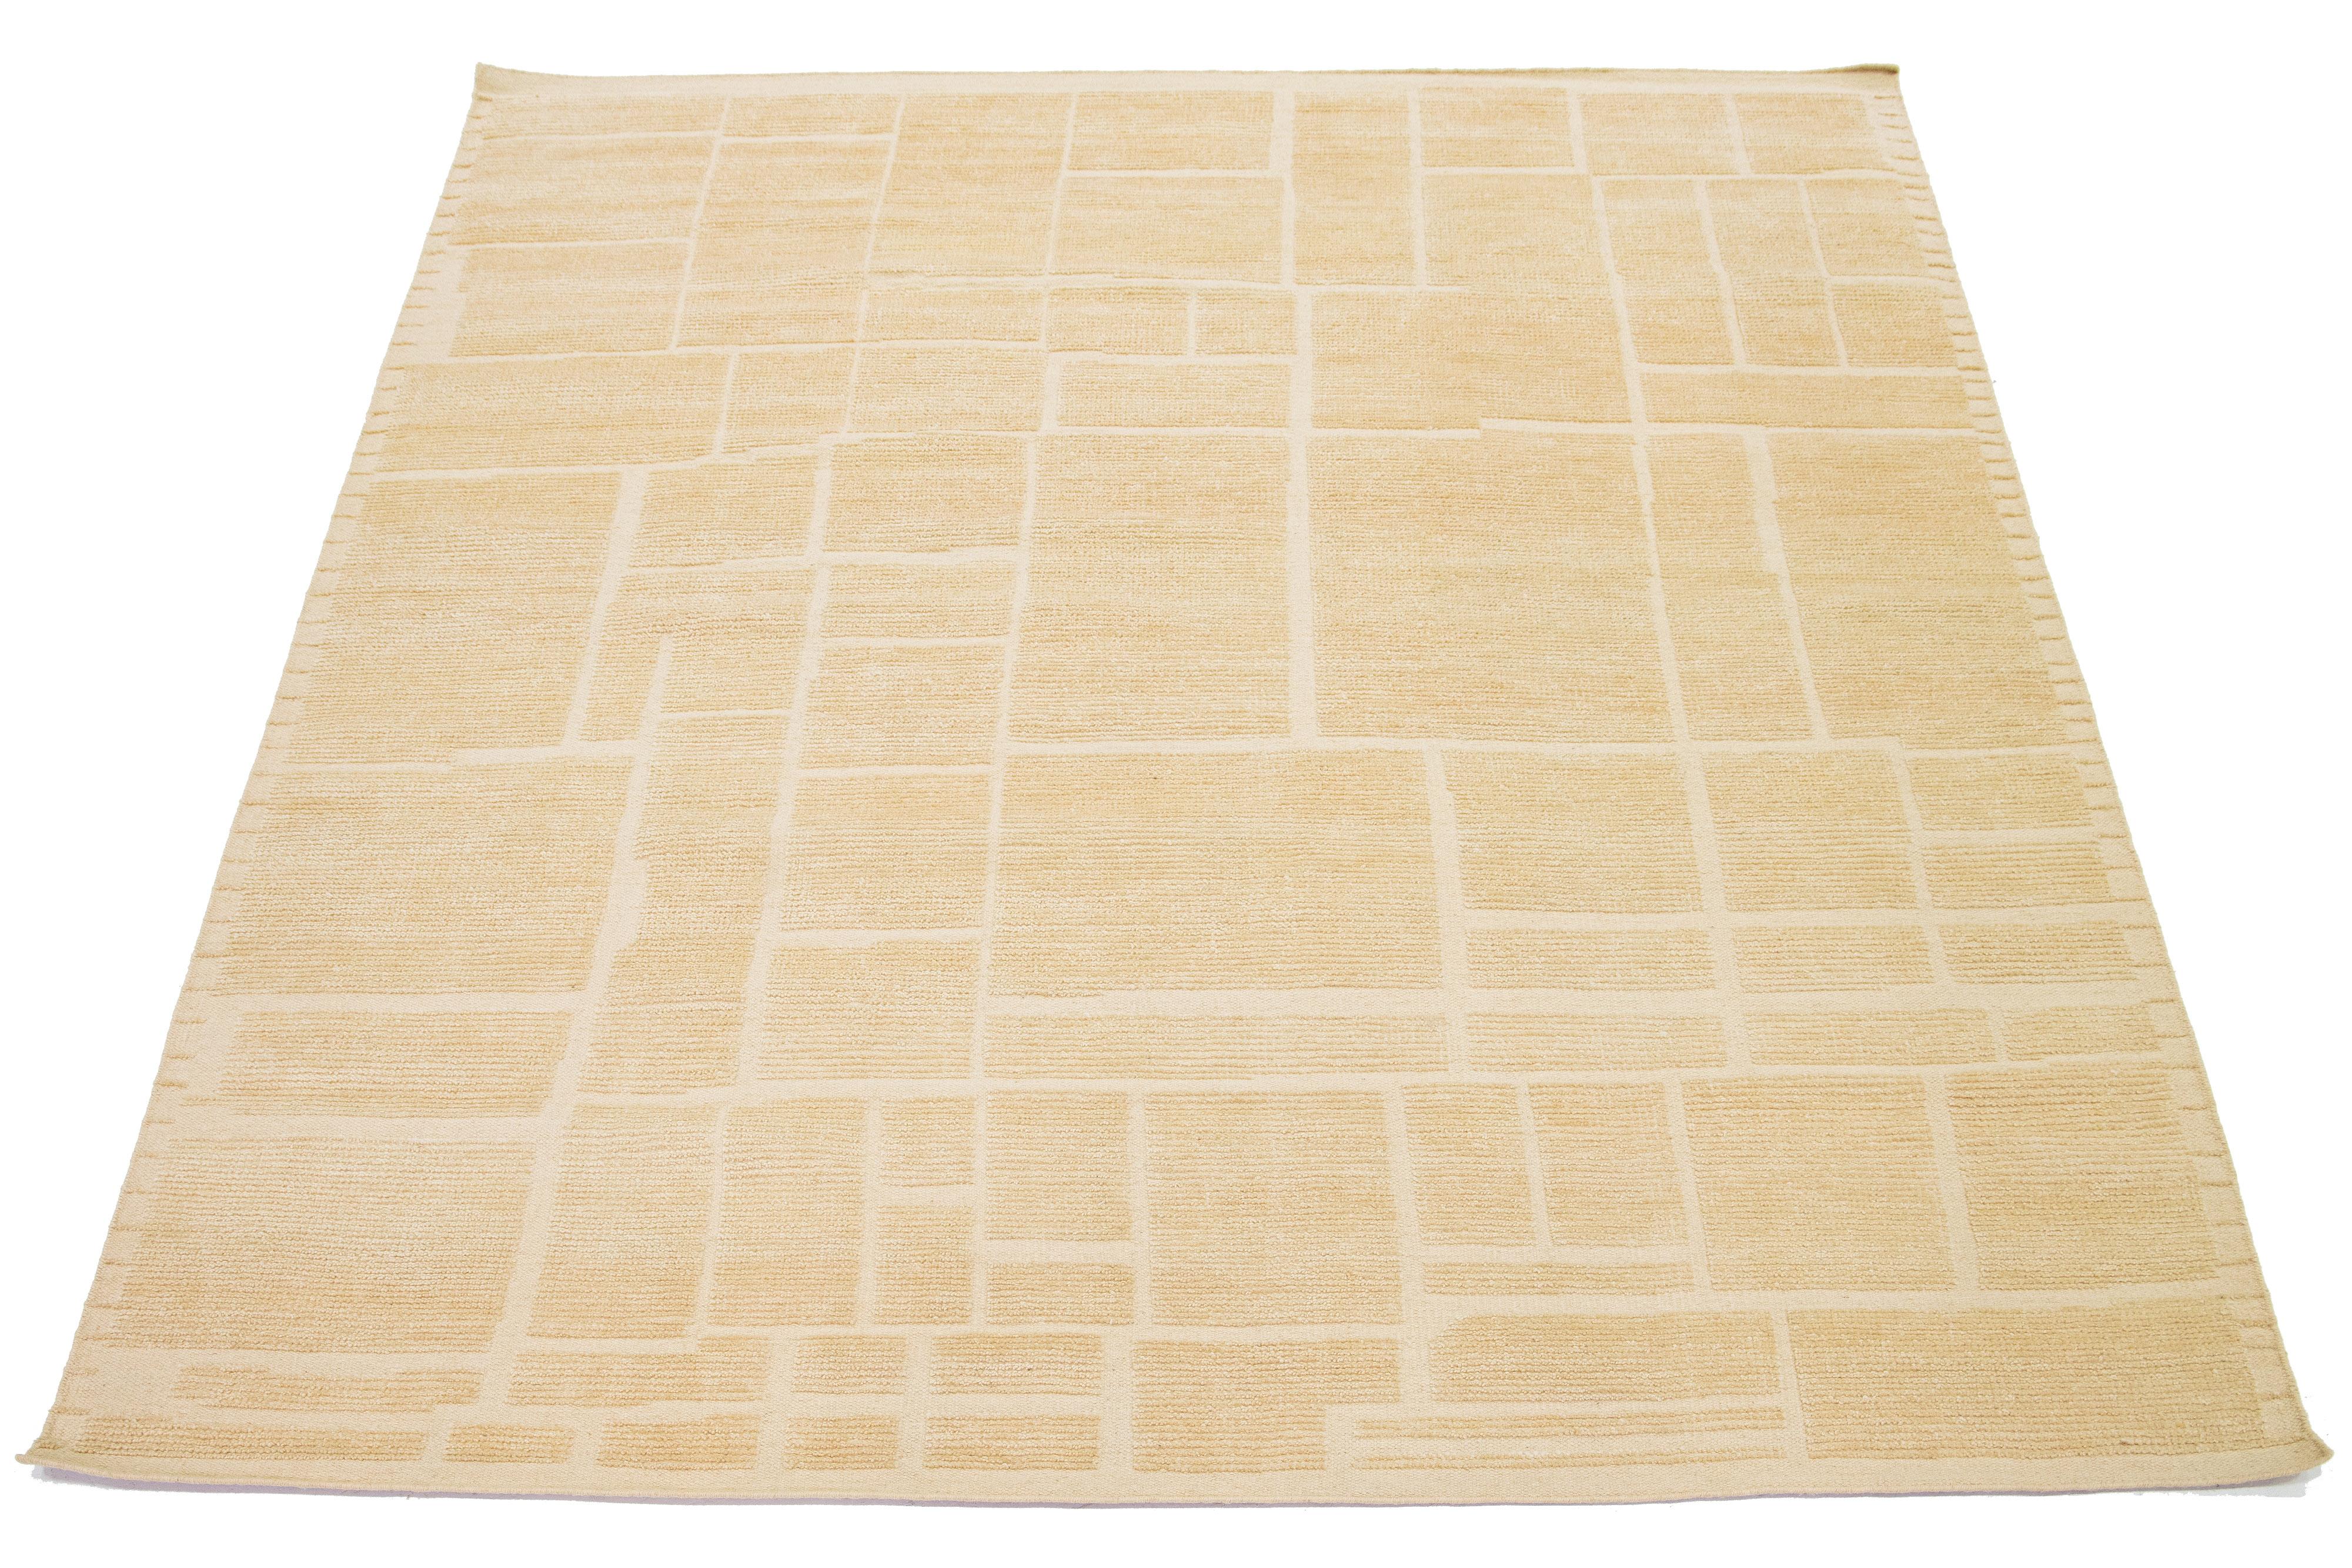 Dieser schöne, moderne Teppich im marokkanischen Stil ist aus Wolle handgeknüpft und weist eine natürliche beige-braune Farbe für das Feld auf. Es zeigt ein atemberaubendes geometrisches Design.

Dieser Teppich misst 8' x 10'.